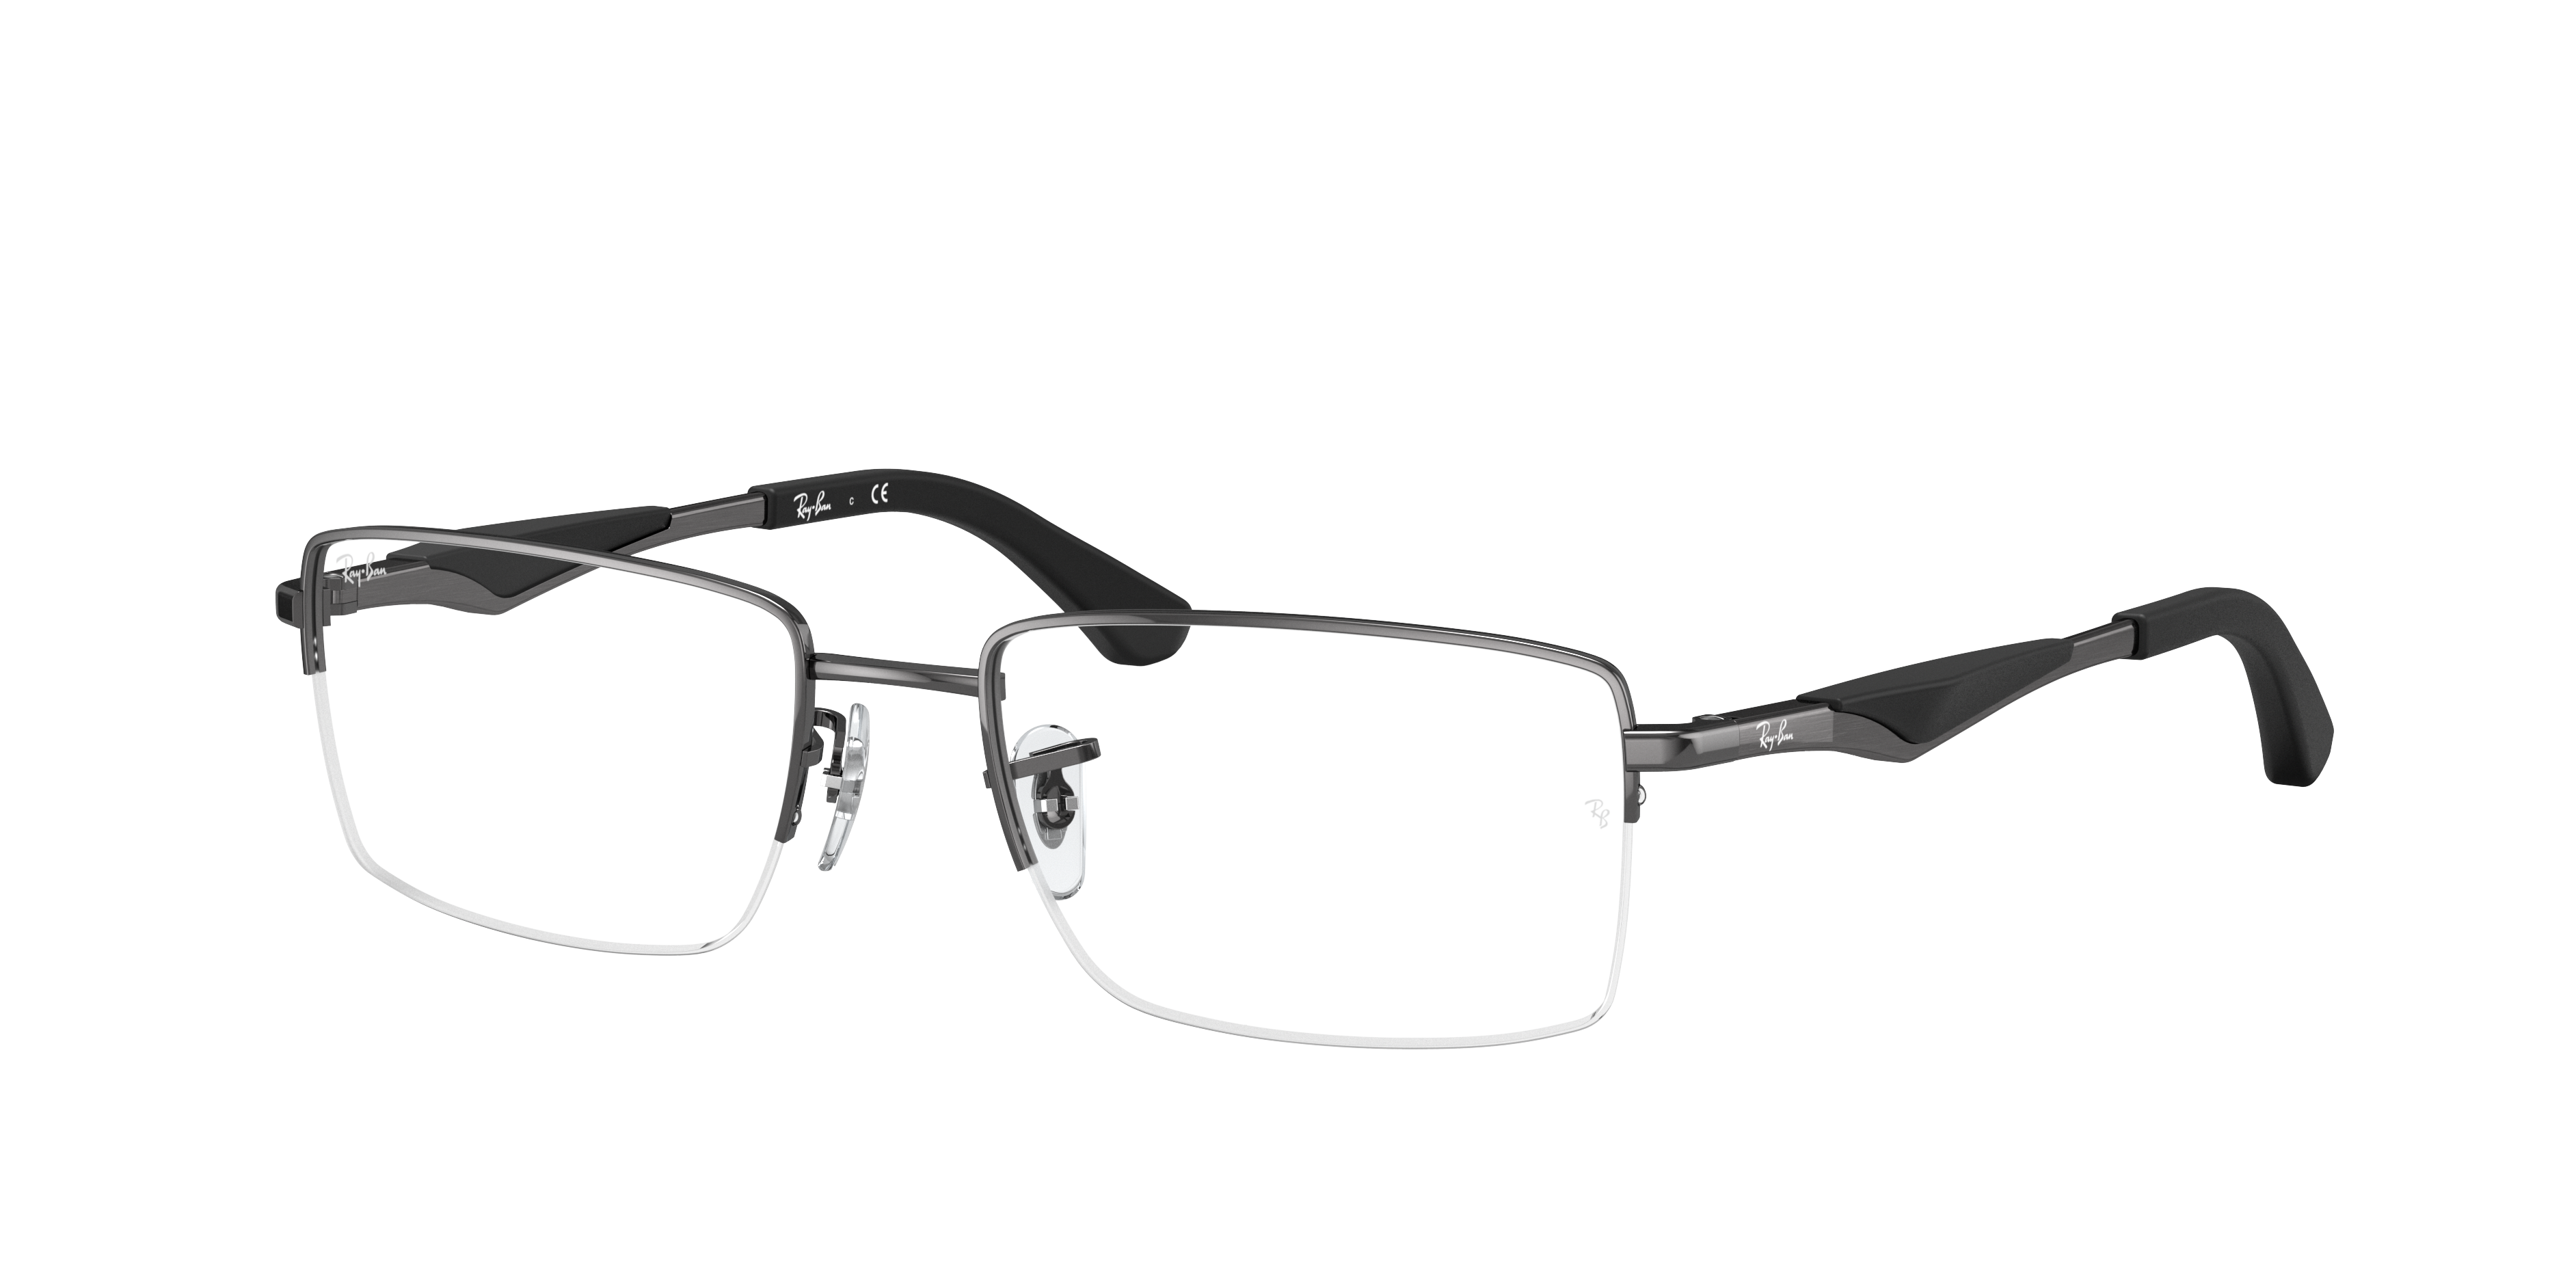 Rb6285 Optics Eyeglasses with Gunmetal Frame - RB6285 | Ray-Ban® US